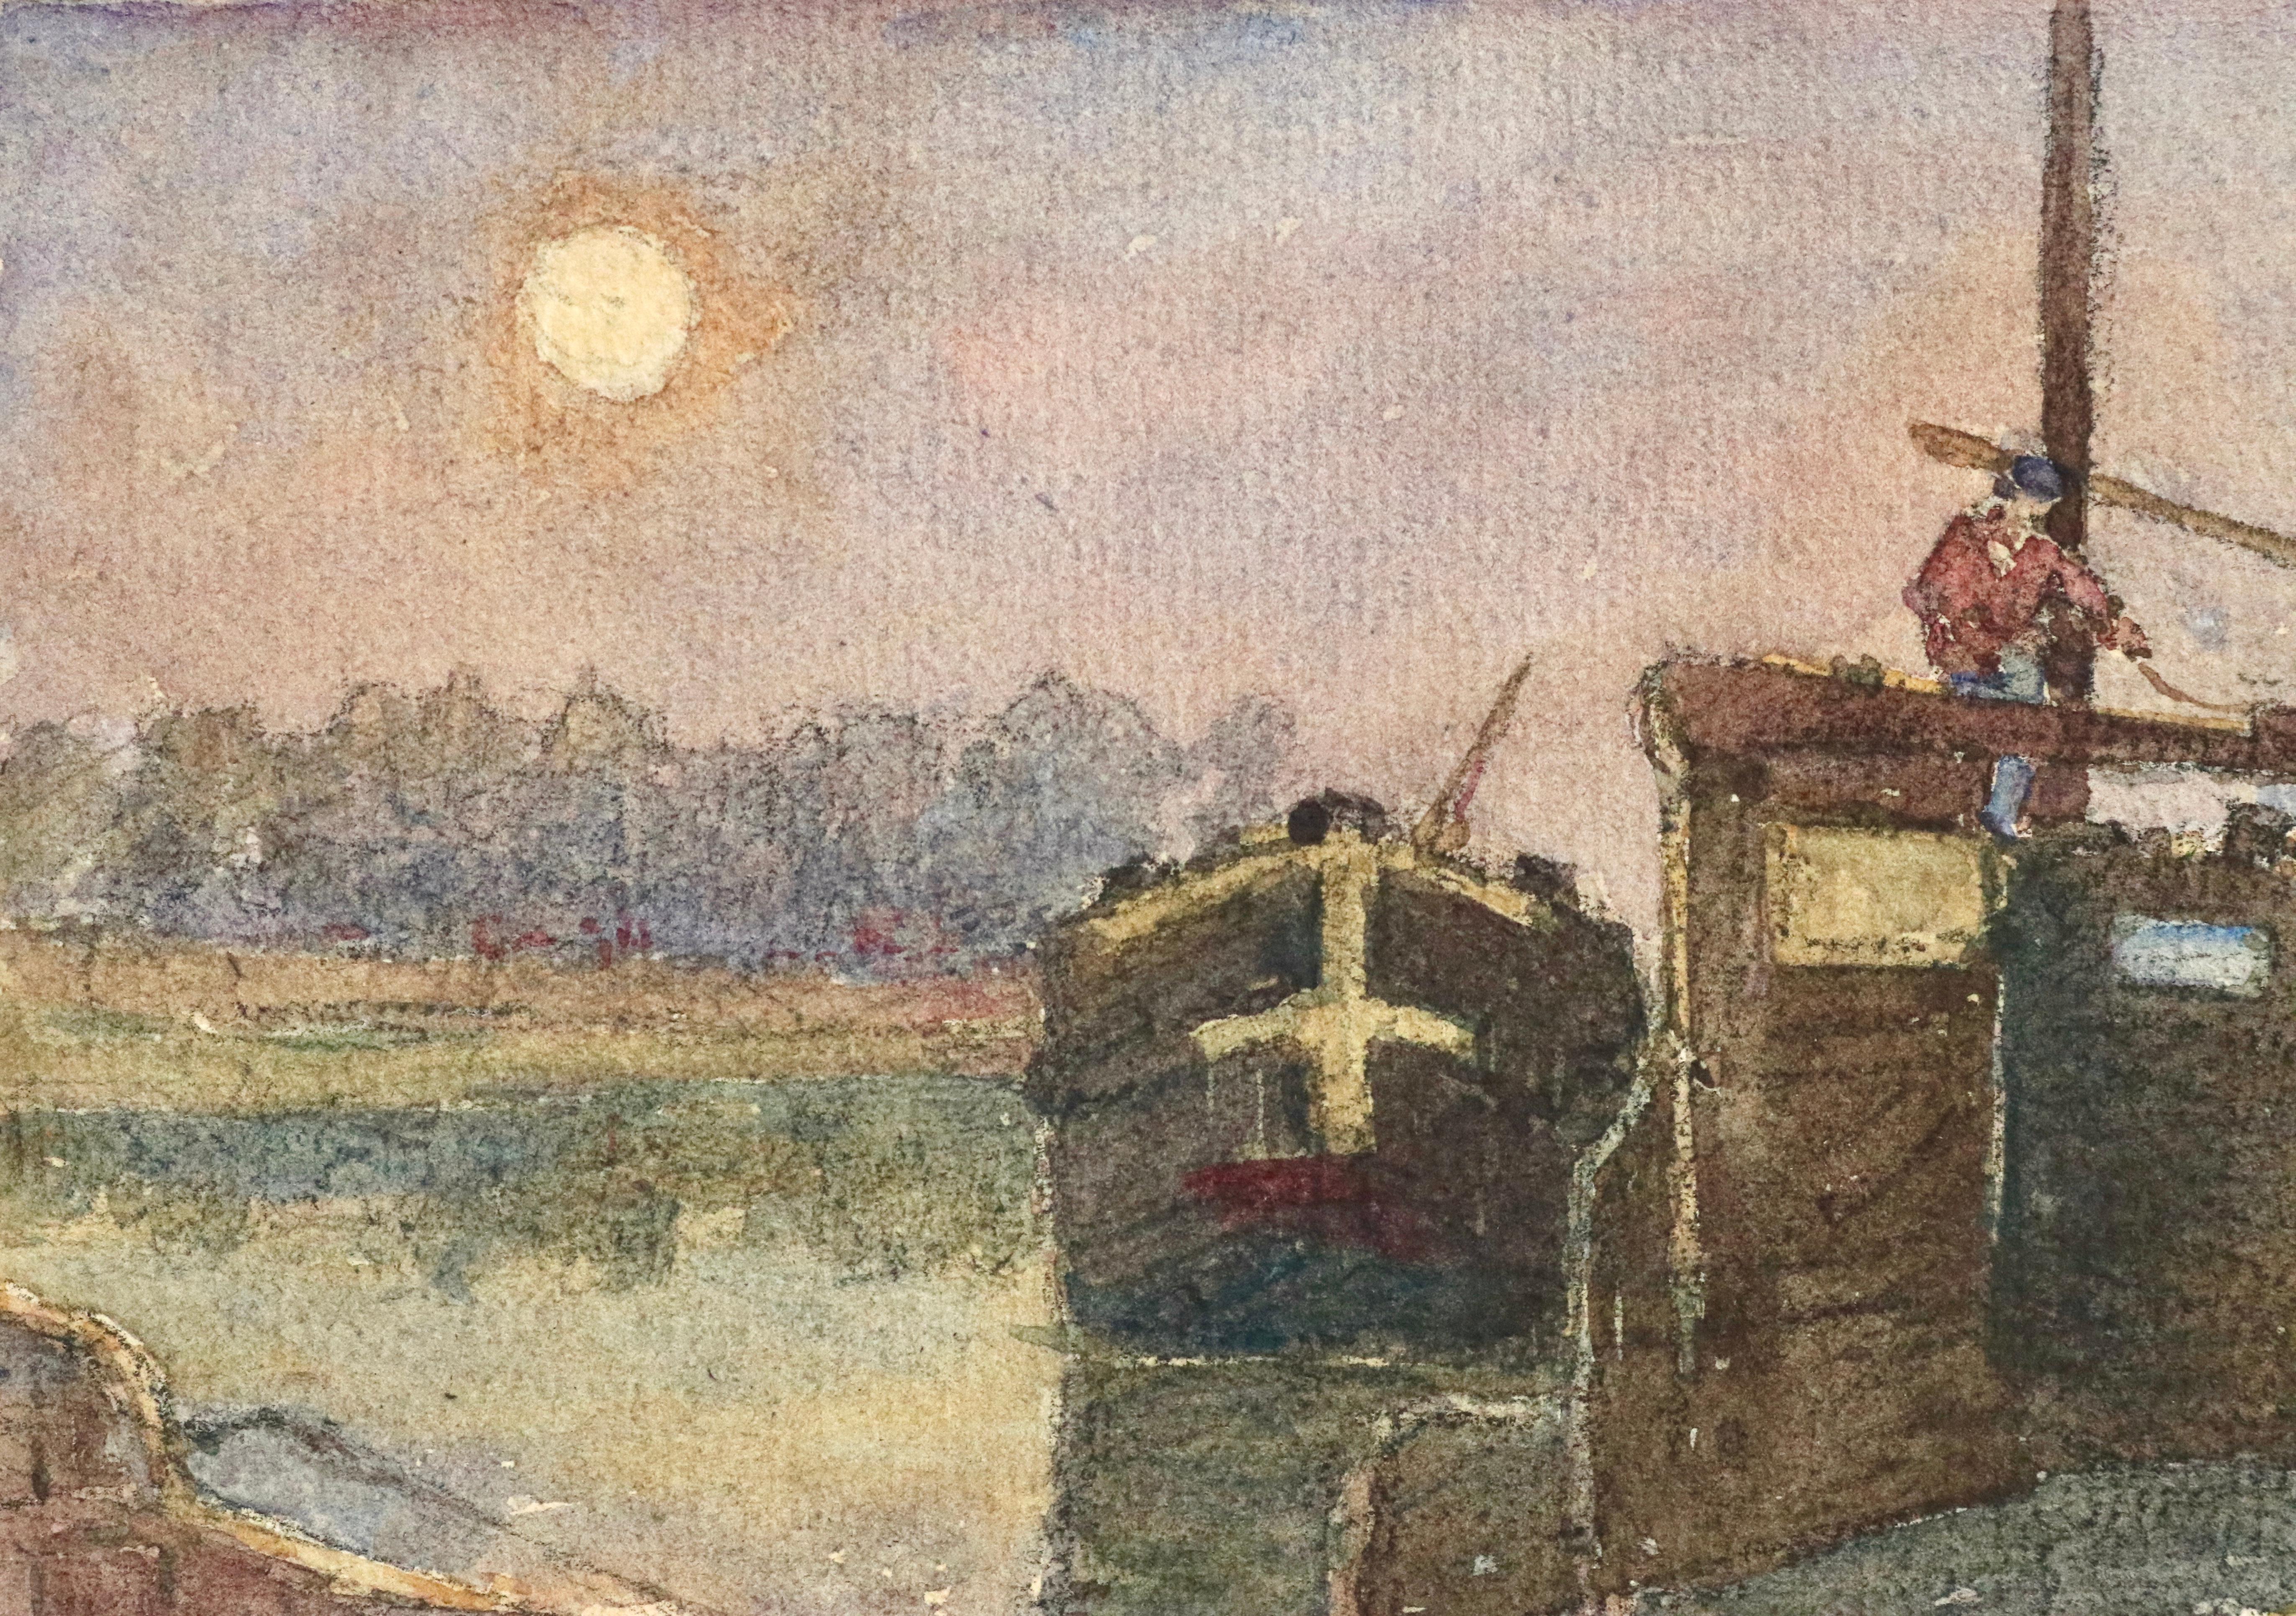 Barges on the River – Aquarell „Barges on the River“ – 19. Jahrhundert, Boote auf Flusslandschaft von Duhem (Impressionismus), Painting, von Henri Duhem